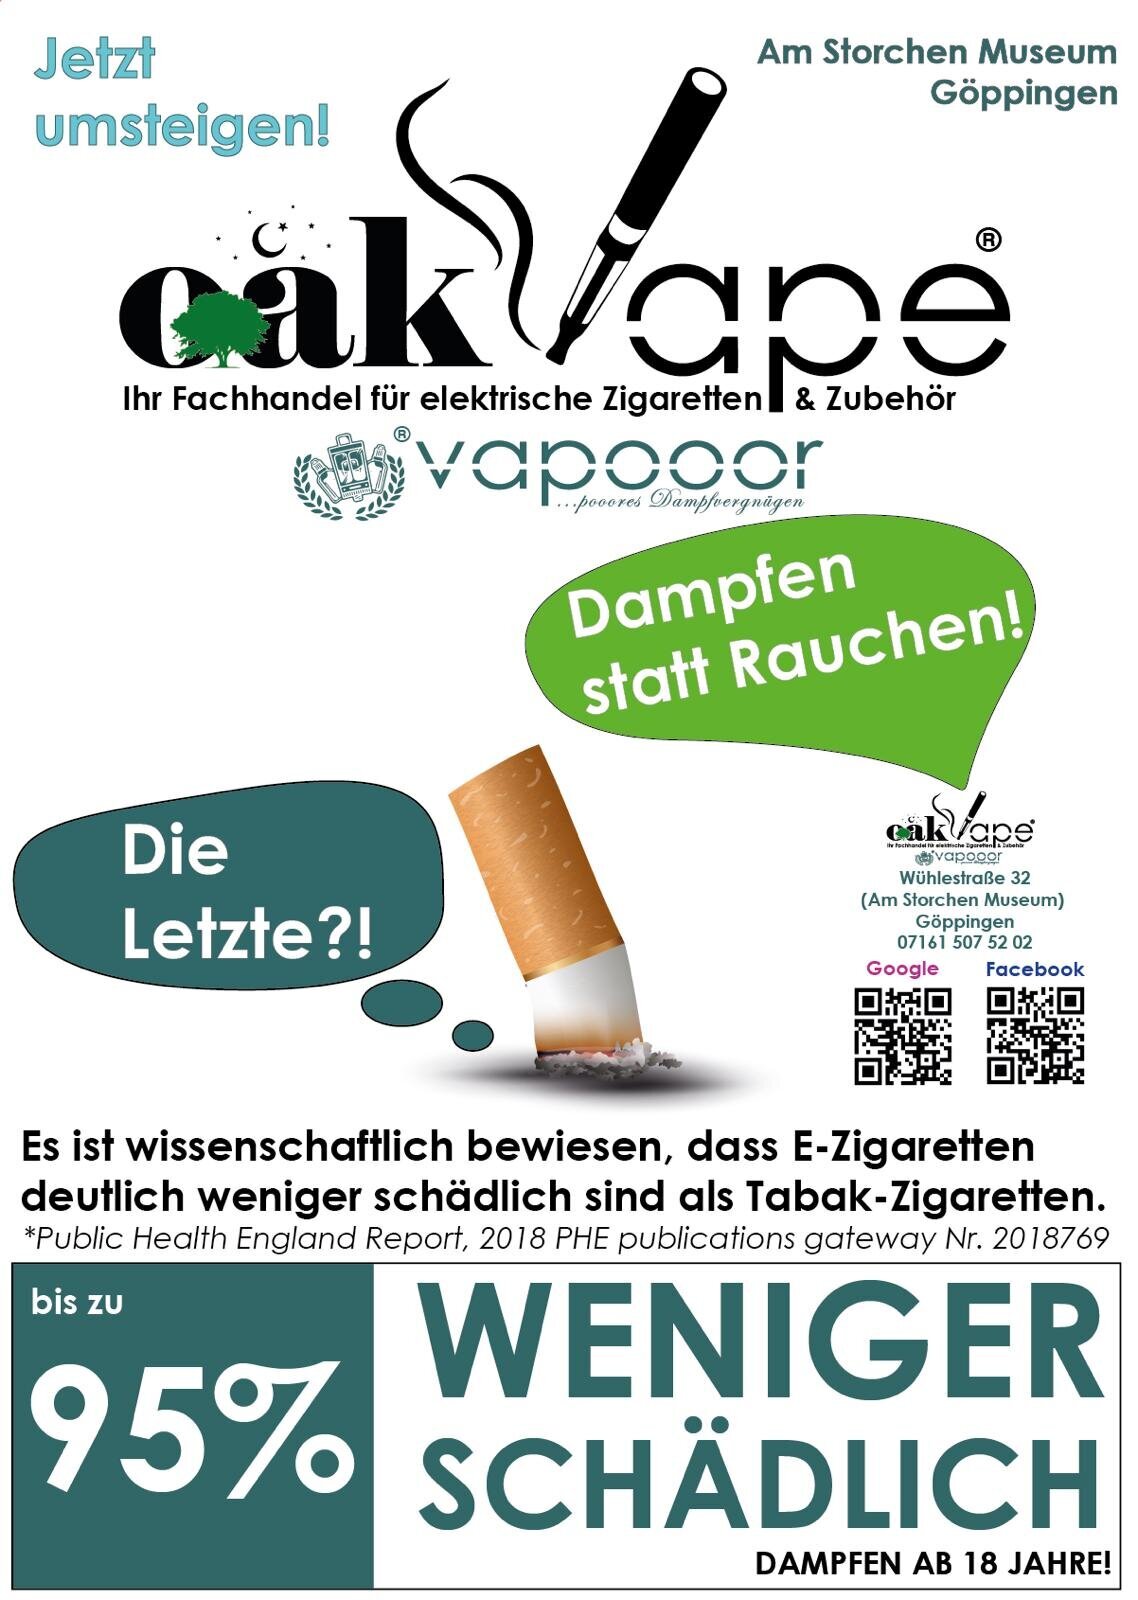 Bild 2 oakVape / vapooor - Ihr Fachhandel für elektrische Zigaretten & Zubehör Liquid Aroma Base Kiosk Vape Store in Göppingen in Göppingen